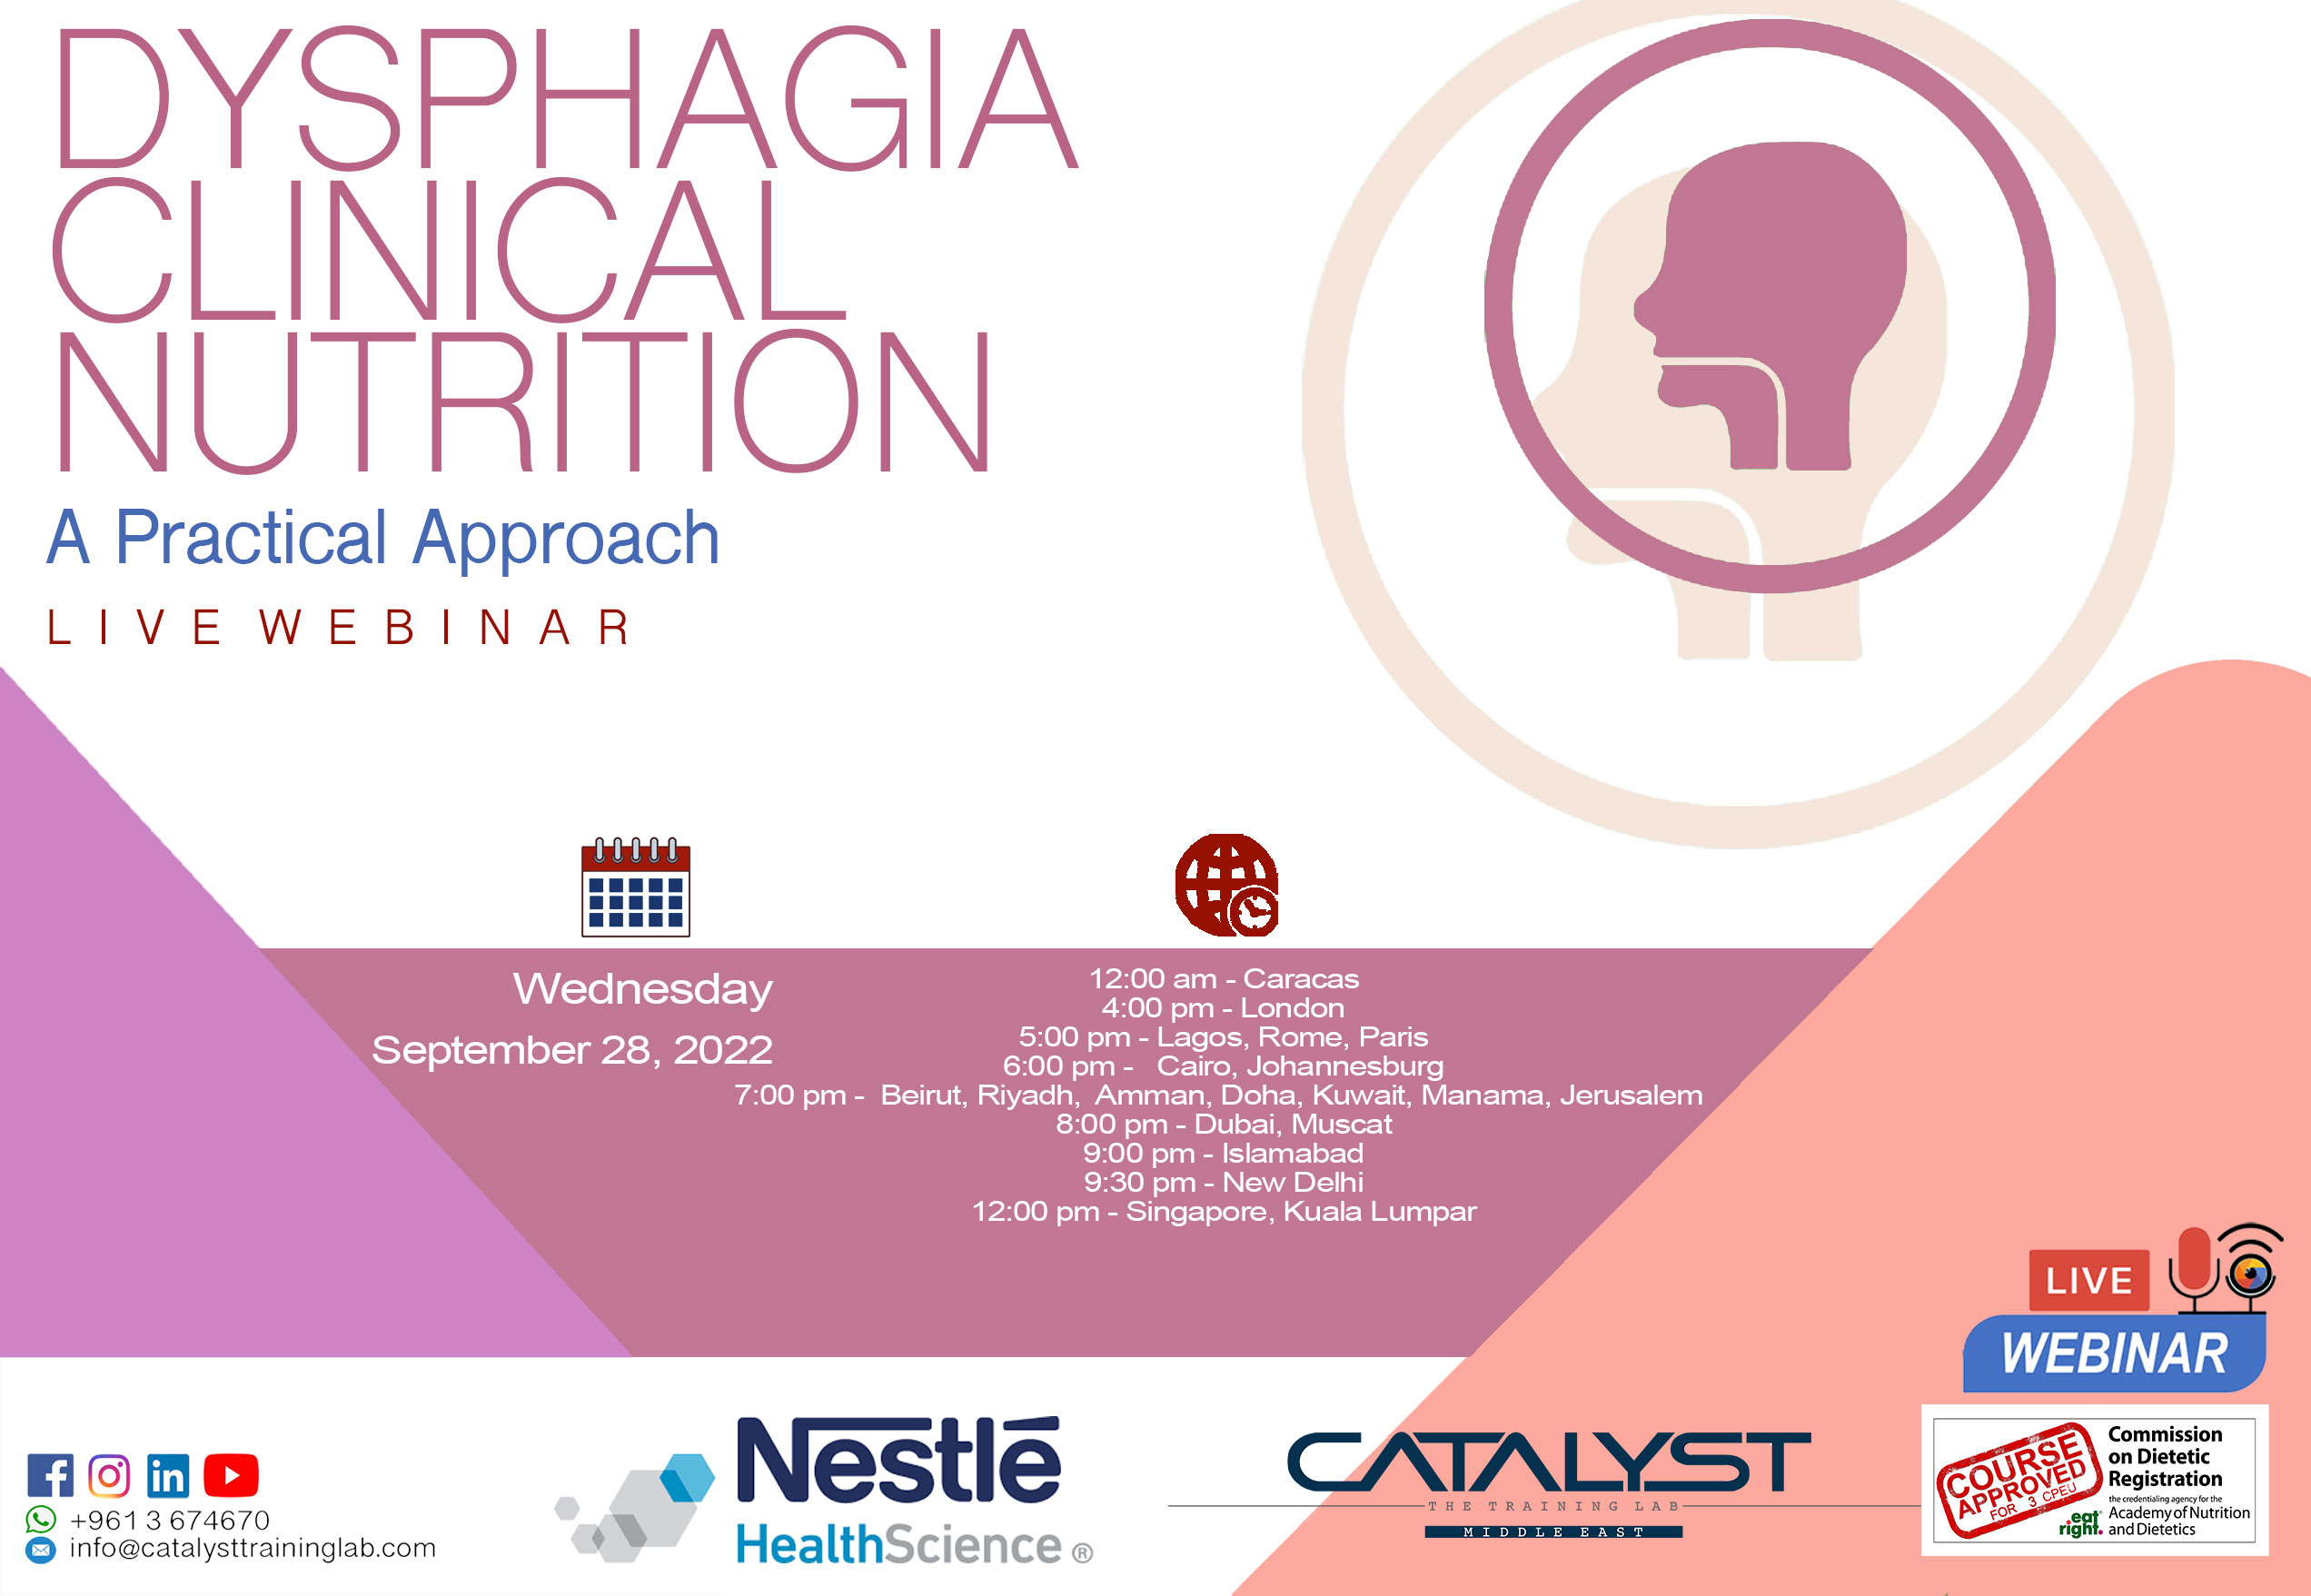 Dysphagia Clinical Nutrition - A clinical Approach